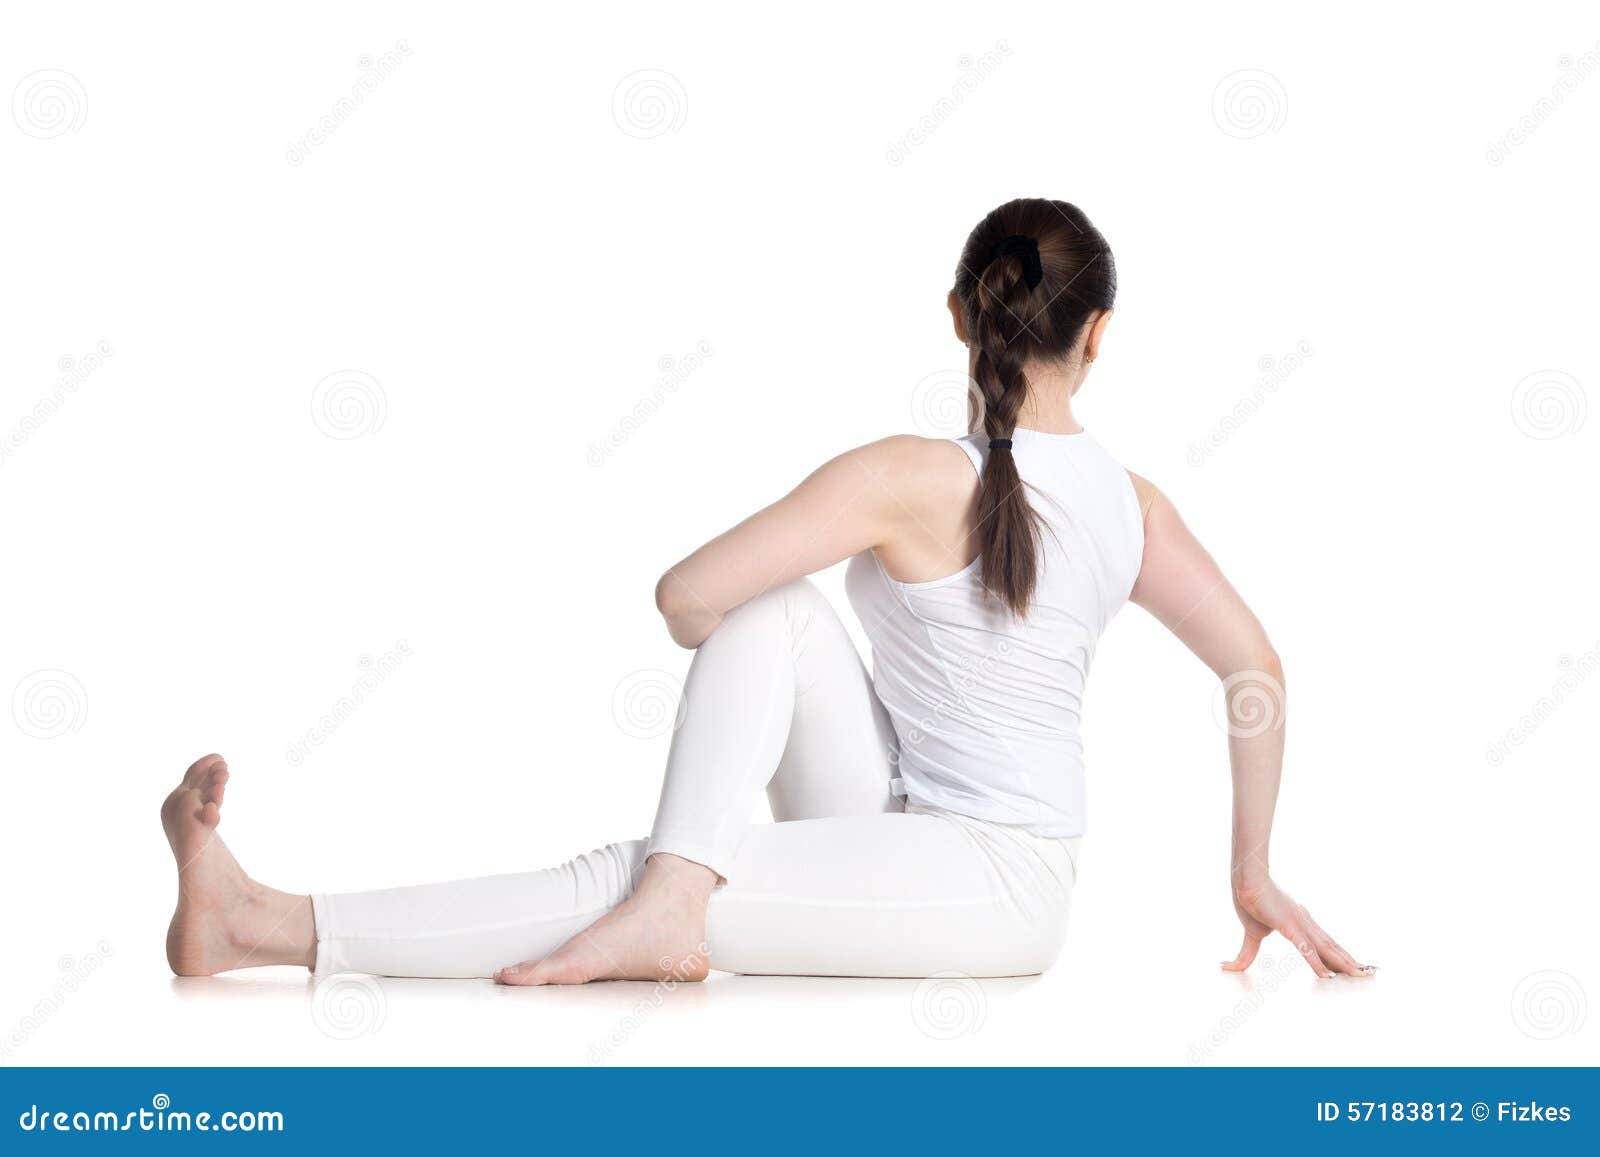 Easy Twist Pose #fitness #mobility #flexibility #health #yoga #yogapos... |  TikTok